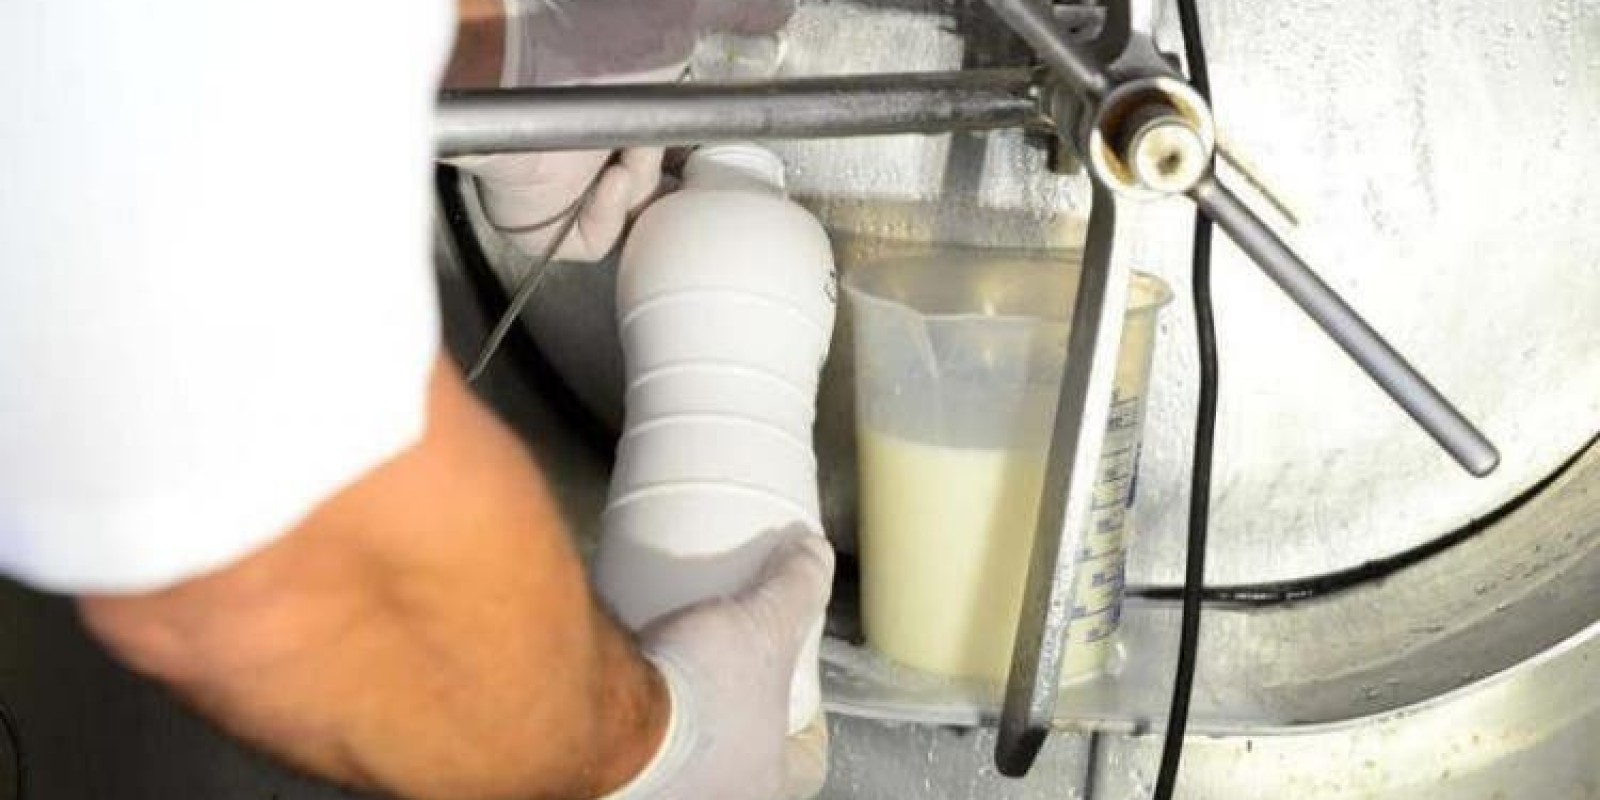 Procon notifica três indústrias em Santa Catarina por aumento de até 50% no preço do leite